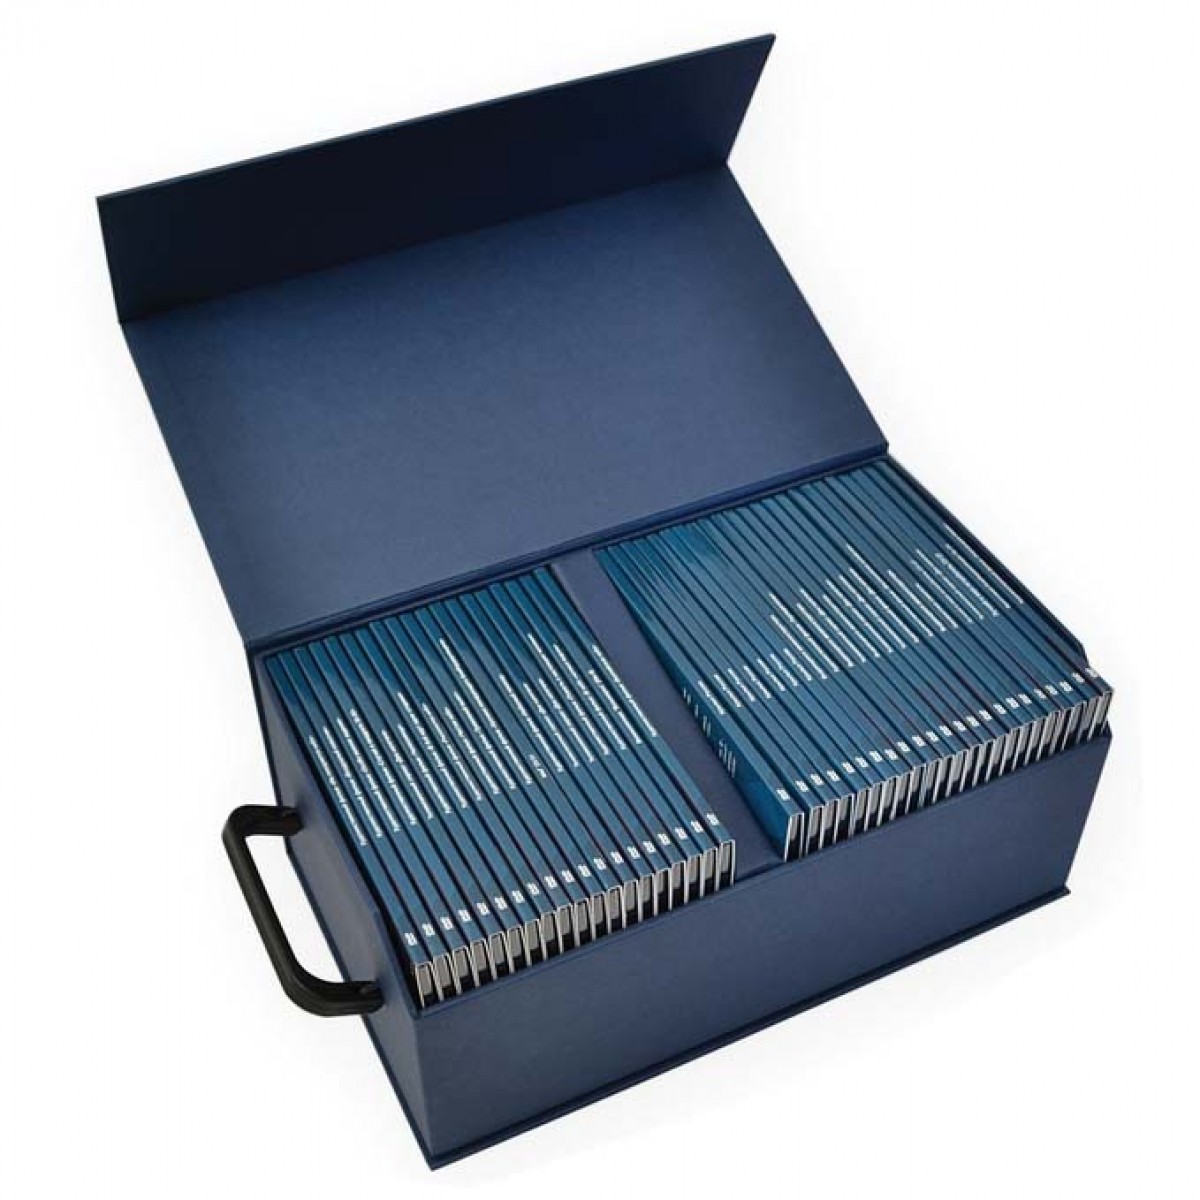 Коробка конструкции "книга", под коллекцию CD дисков